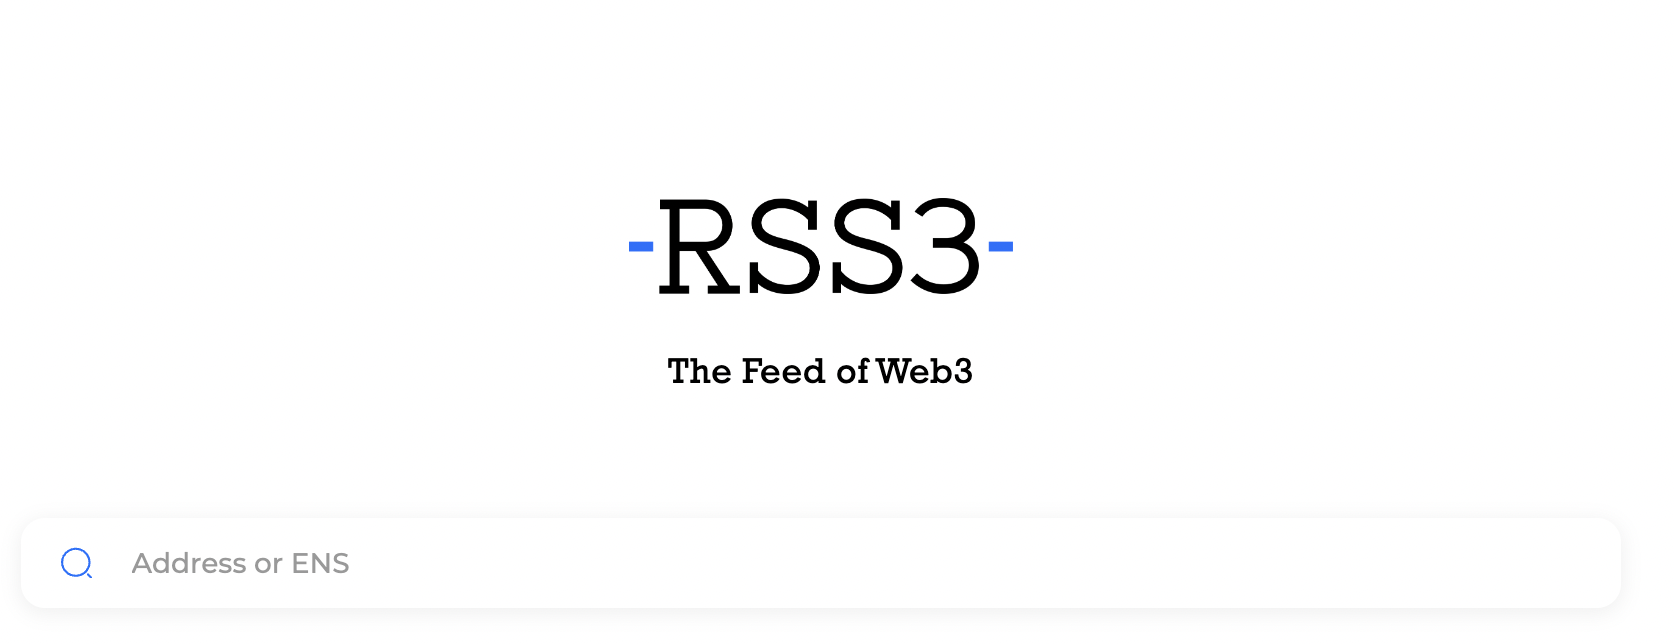 RSS3.io 正是此传播技术协定的实践，可以在此输入任何ENS，便能检视并RSS订阅其链上活动。